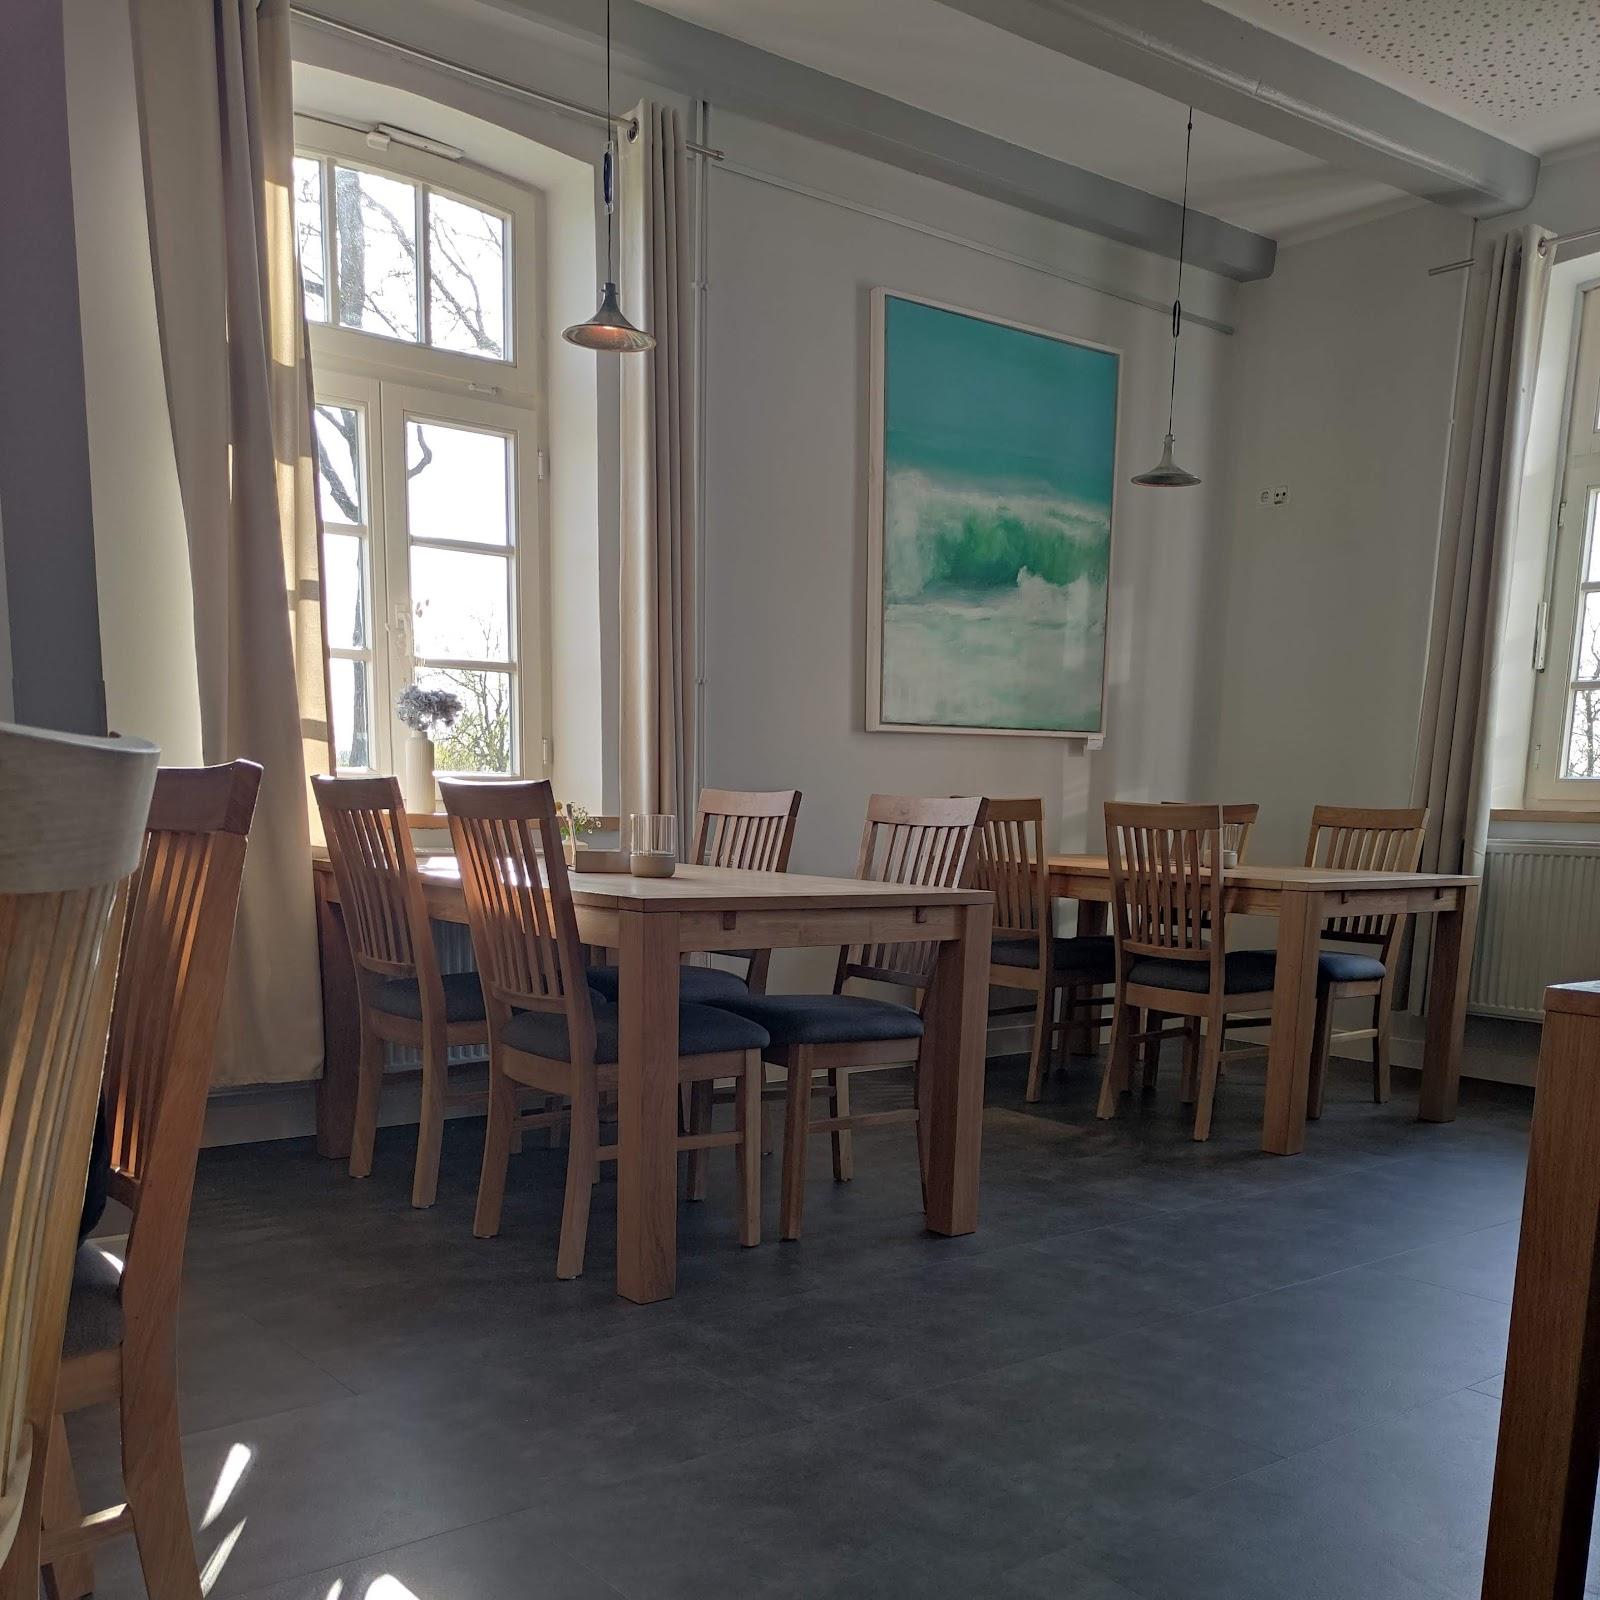 Restaurant "Birdies • Café & Restaurant am Golfclub Wilhelmshaven" in Schortens